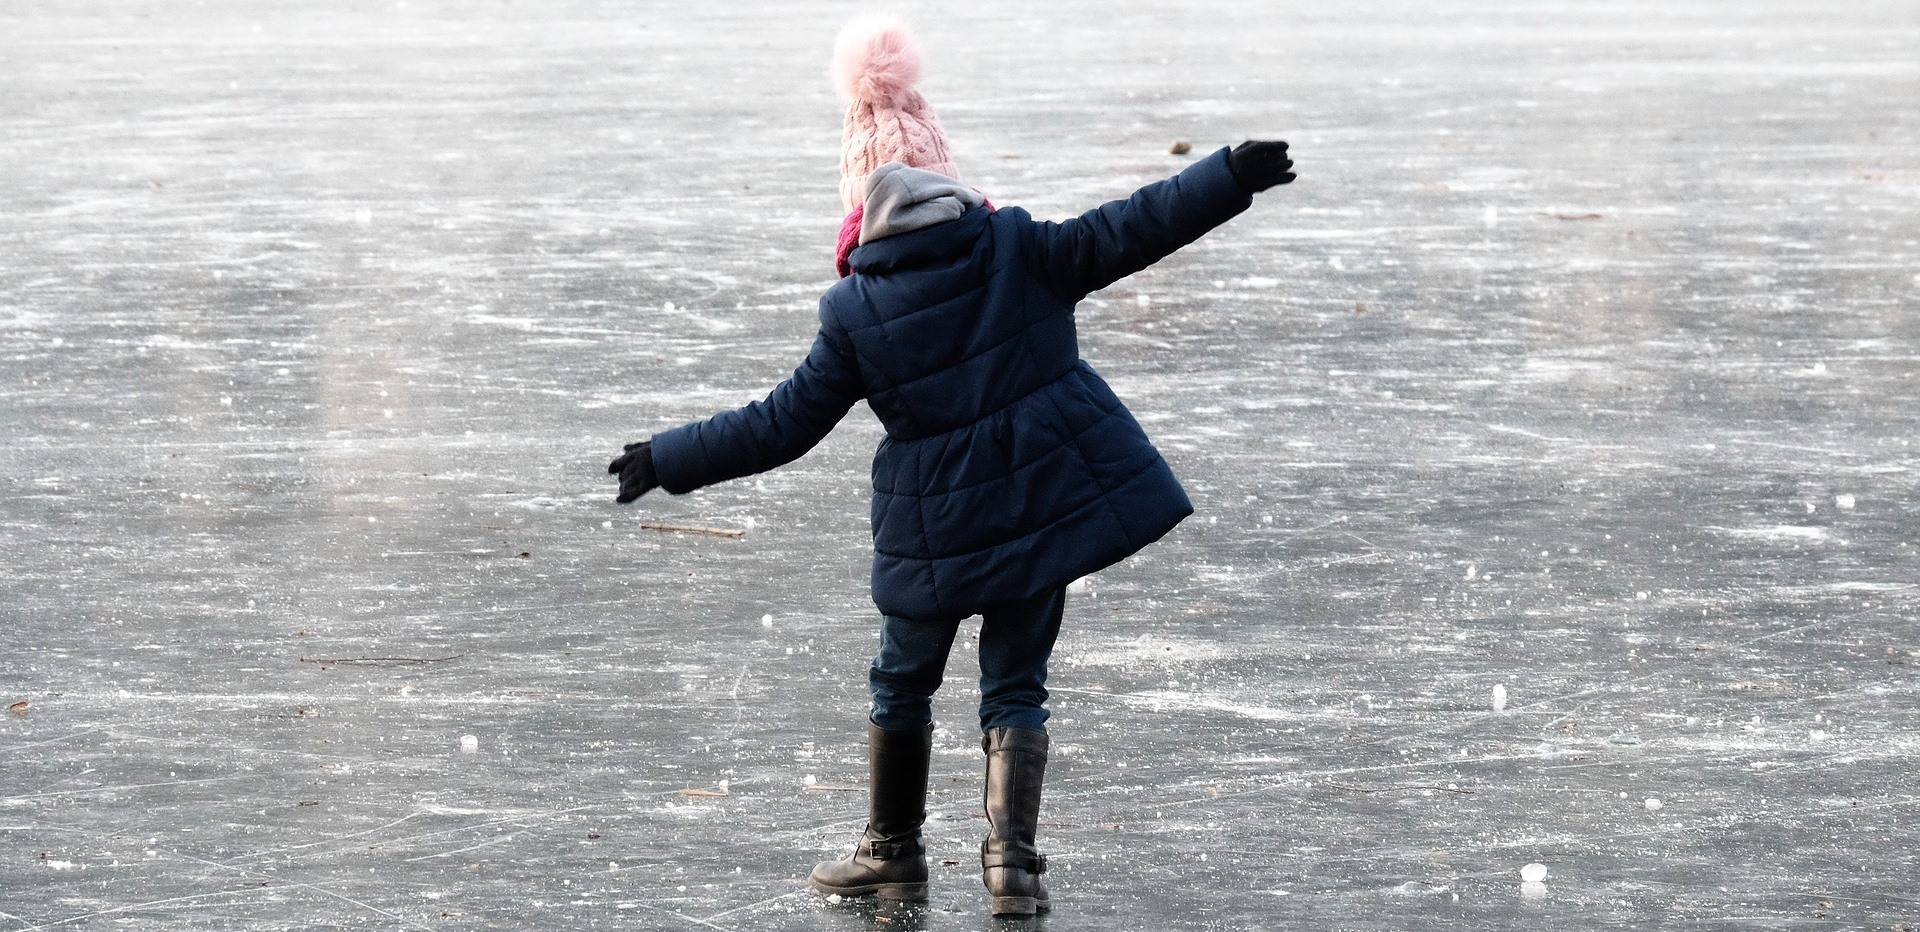 Первый лед текст. Тонкий лед. Человек идет по льду. Дети ходят по льду.